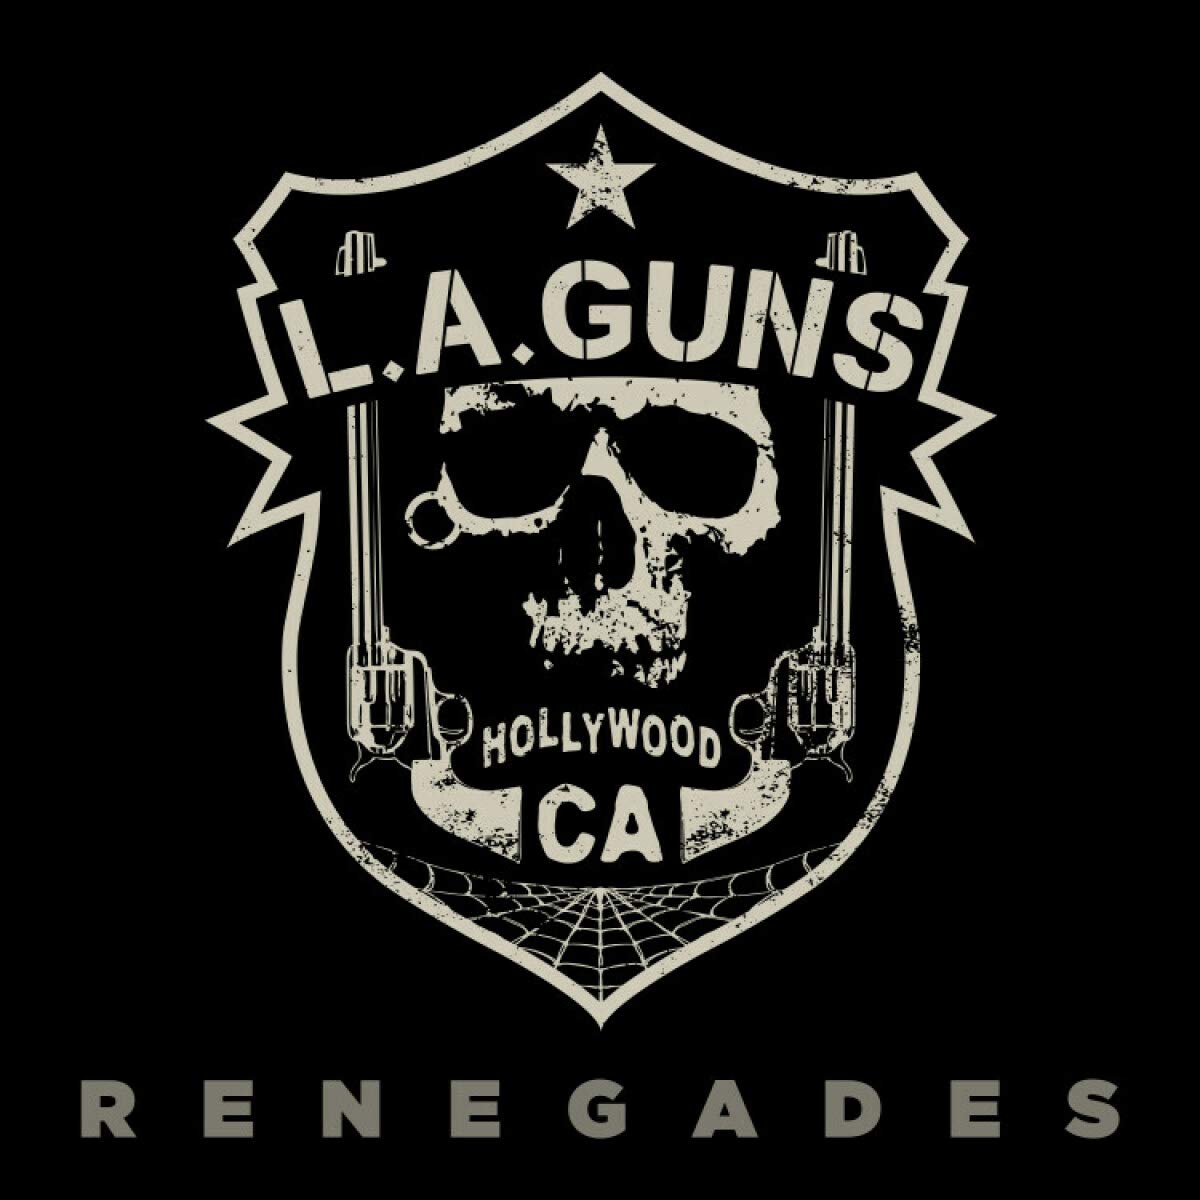 Vinile L.A. Guns - Renegades (Blue Transparent Vinyl) NUOVO SIGILLATO, EDIZIONE DEL 13/10/2020 SUBITO DISPONIBILE